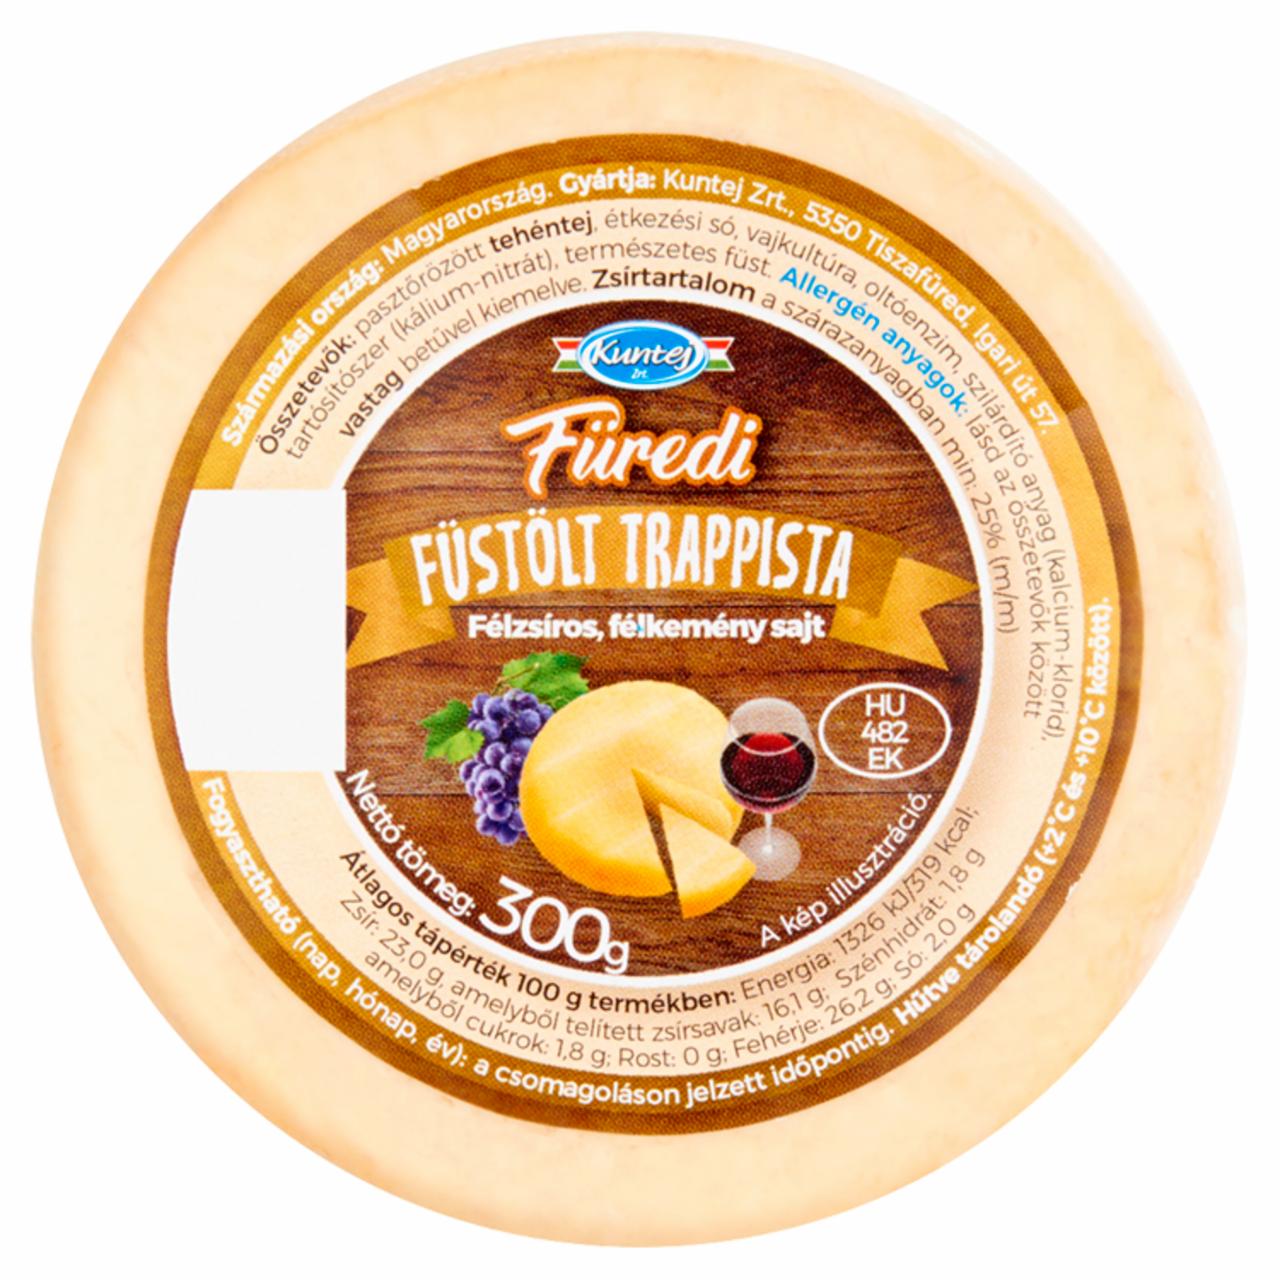 Képek - Kuntej Füredi félzsíros, félkemény füstölt trappista sajt 300 g